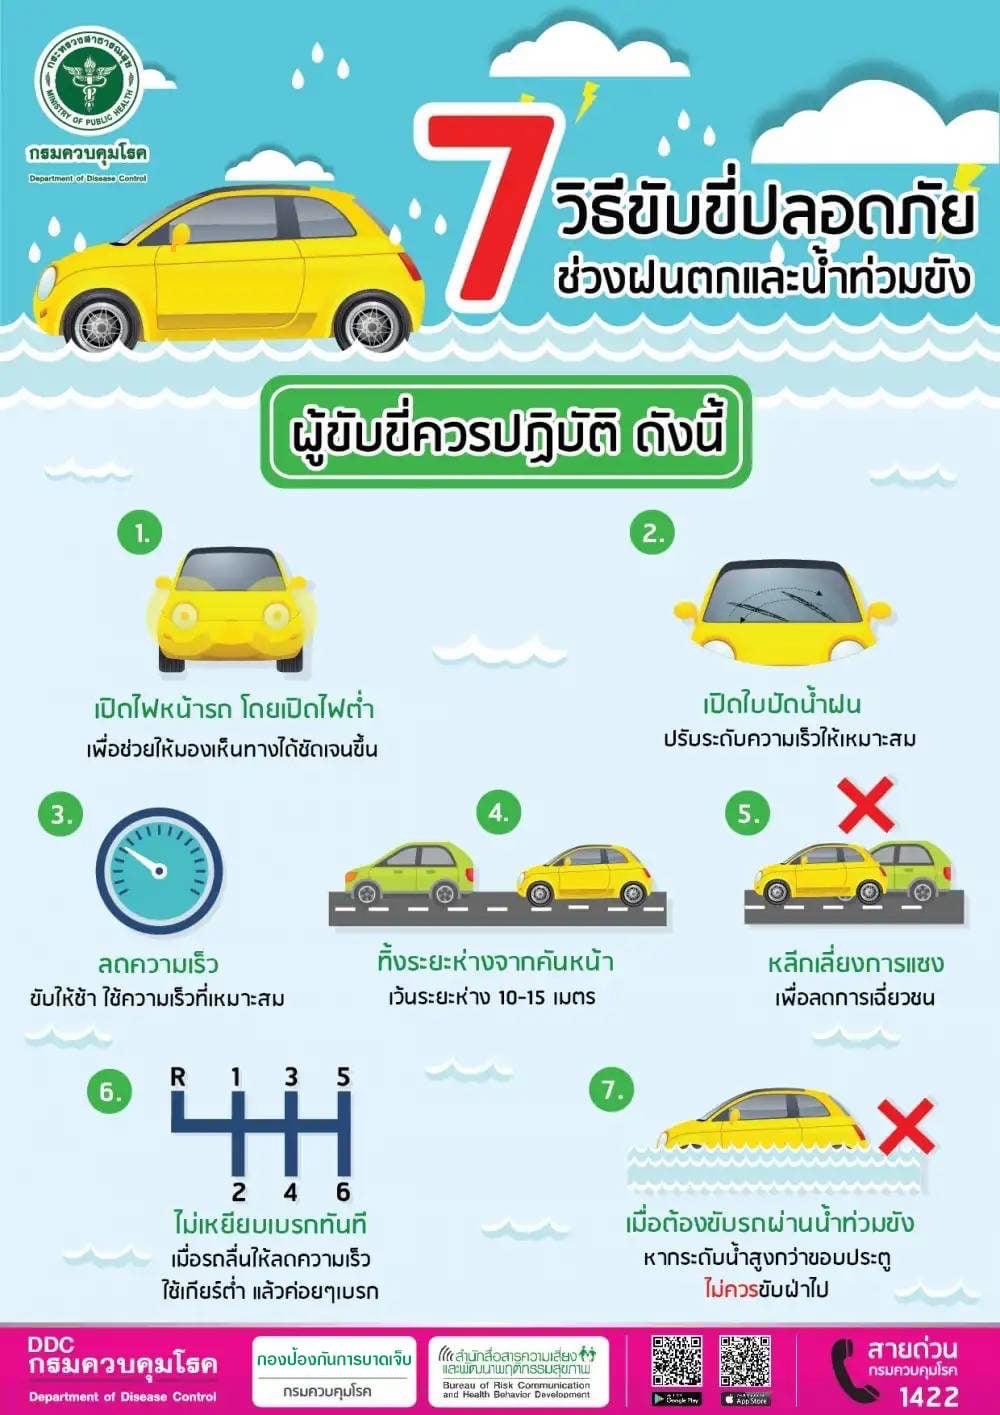 7 วิธีขับขี่รถให้ปลอดภัย ช่วงฝนตก